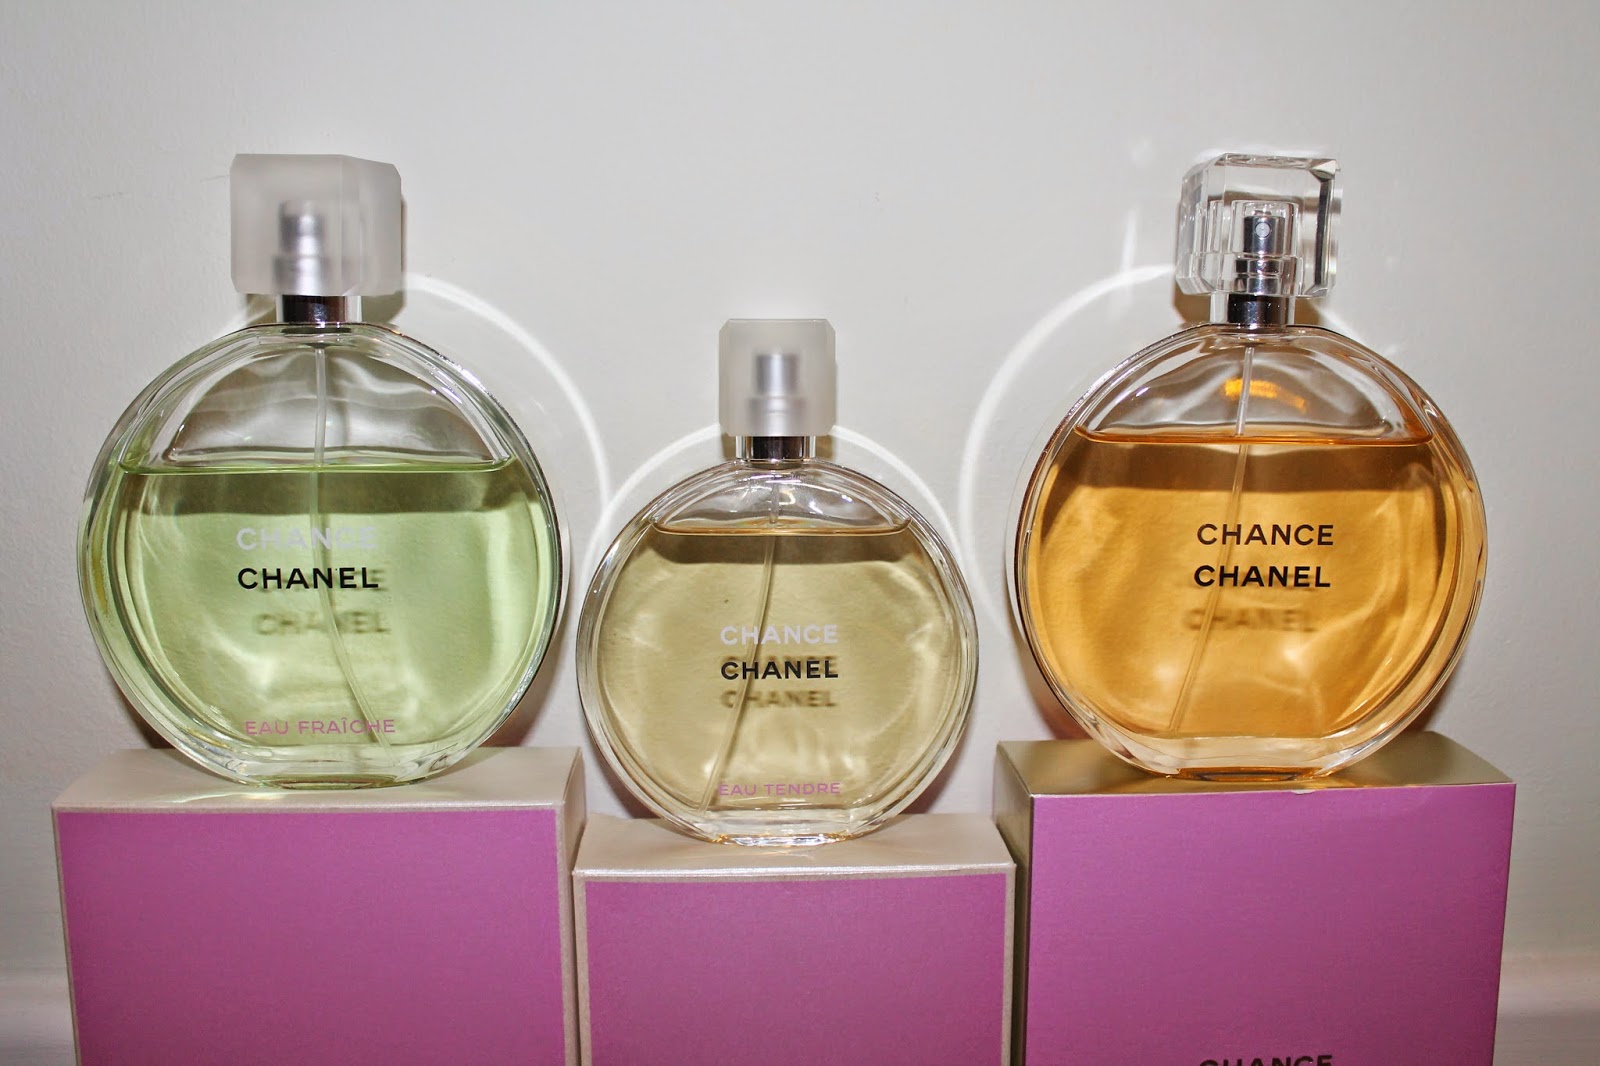 lovestruckfloralprincess: Chanel Chance Eau Vive - Out June 2015